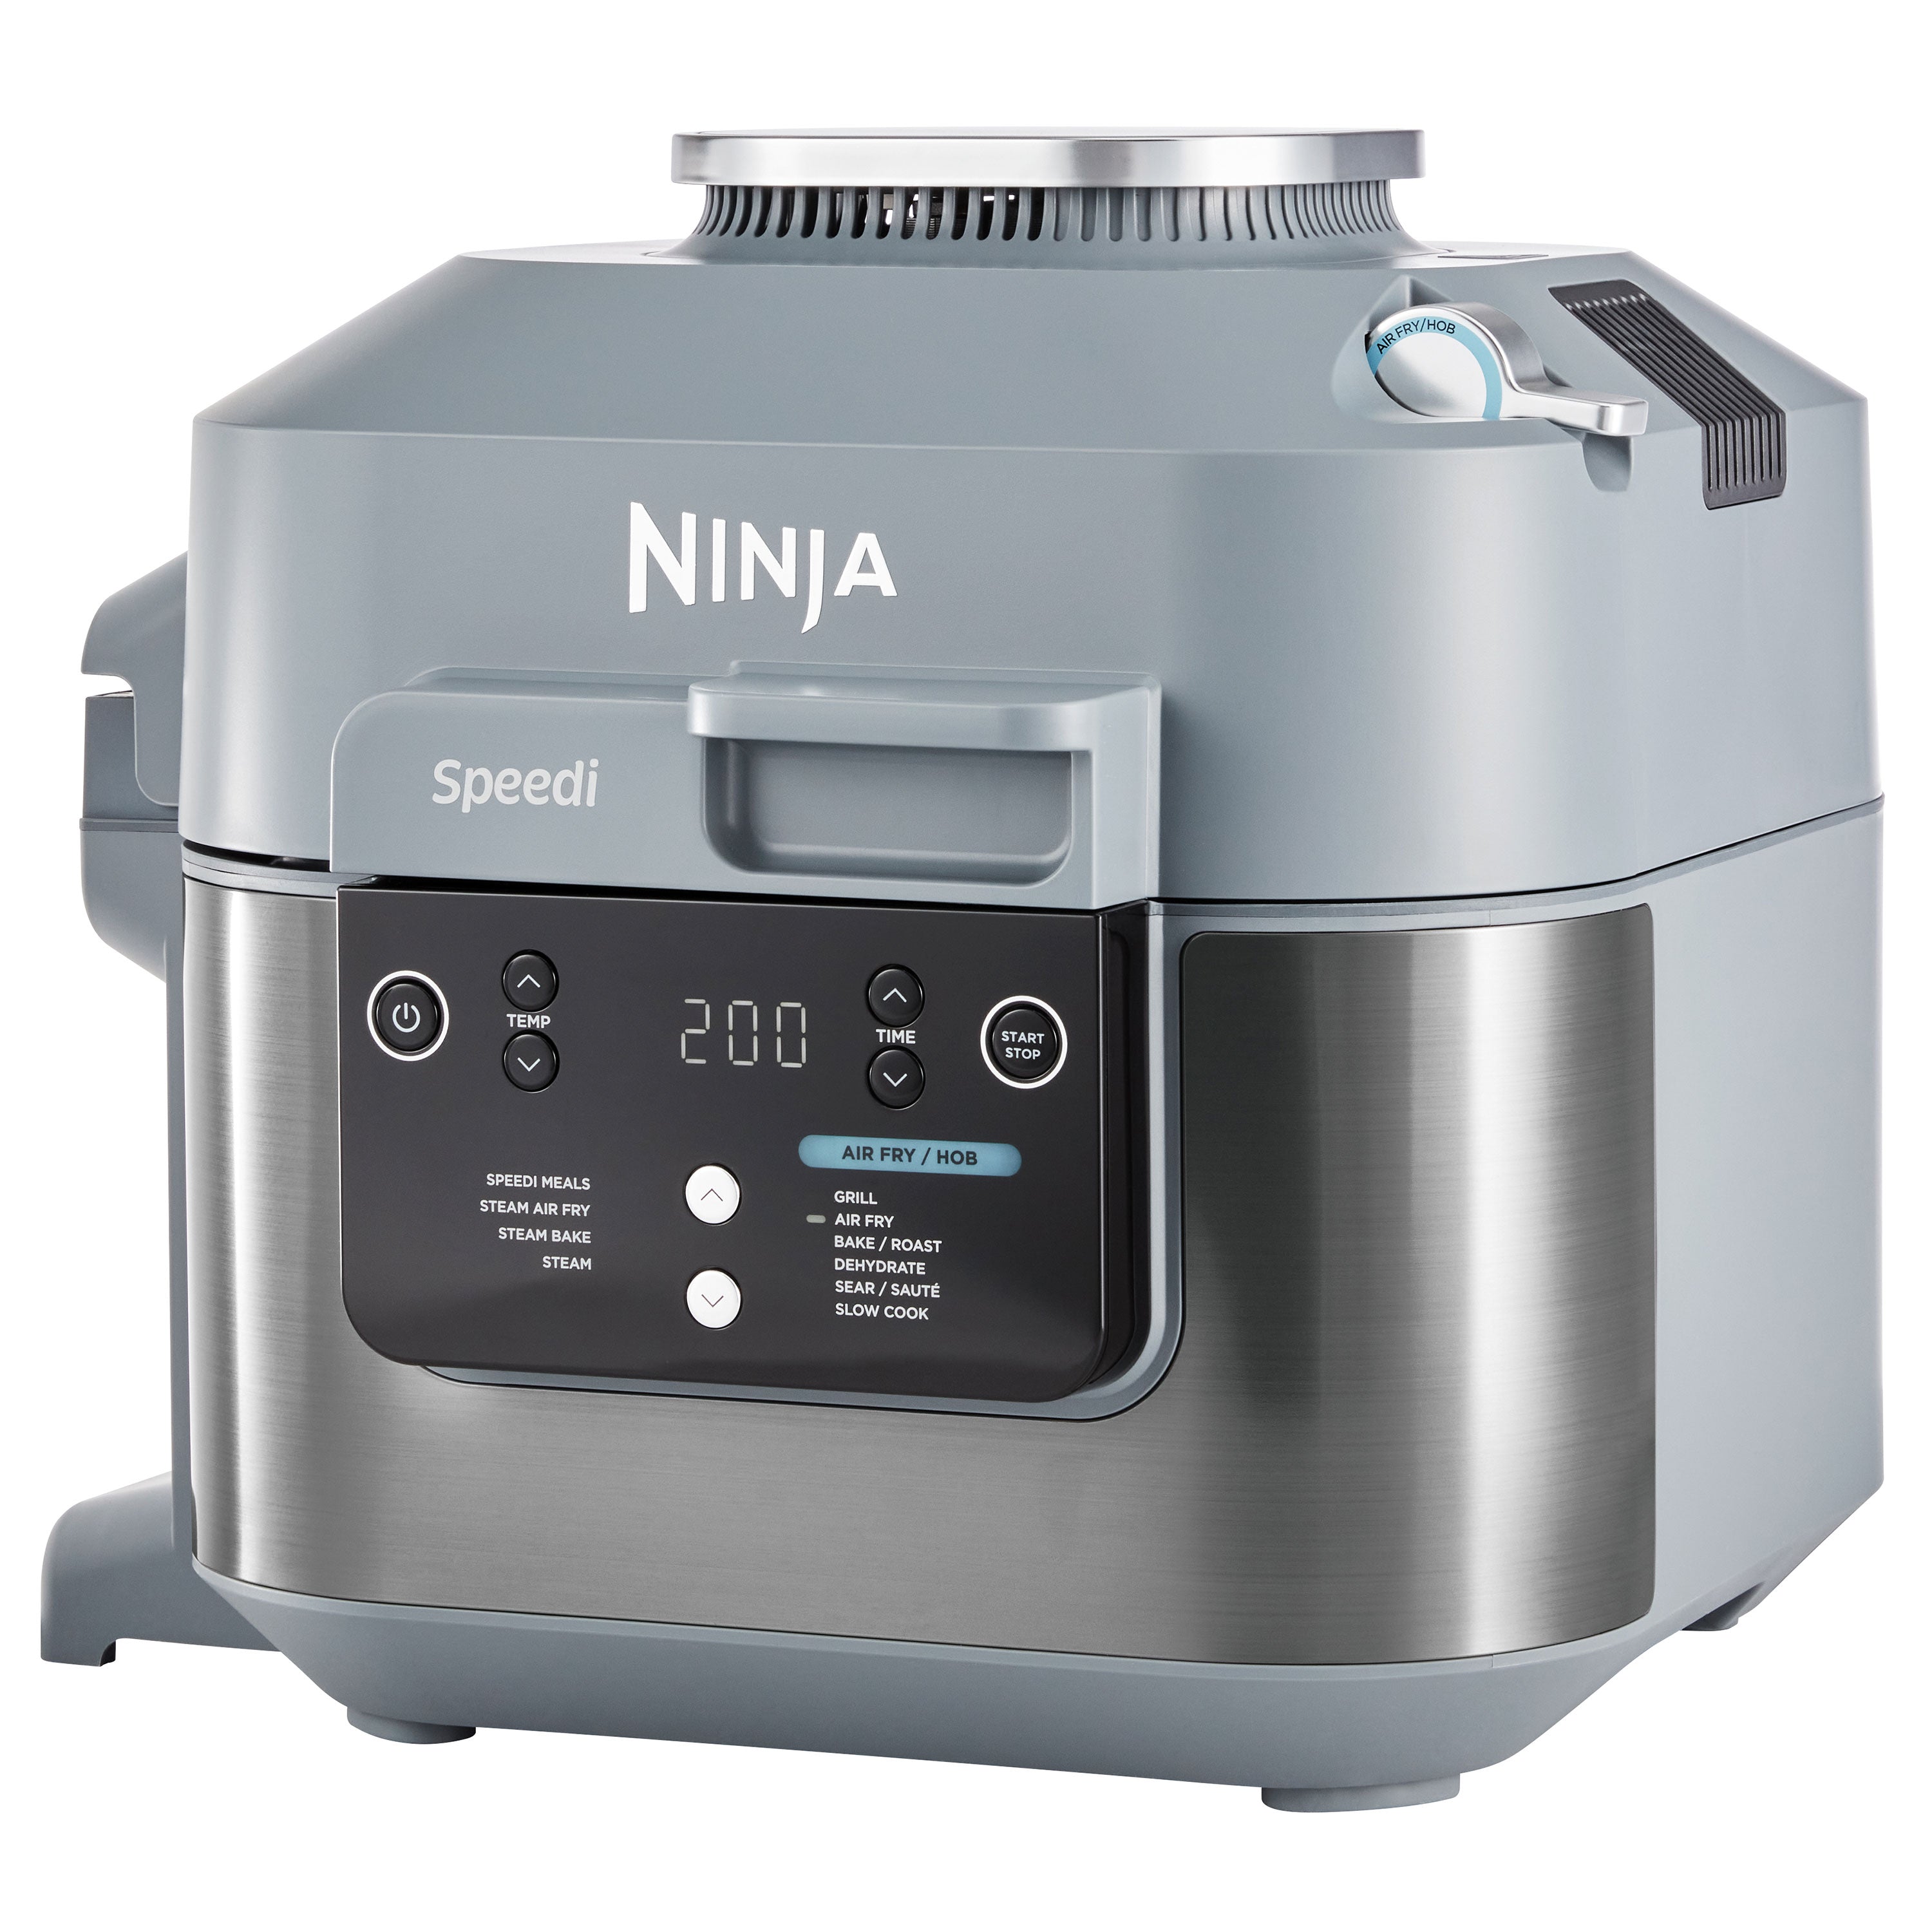 Ninja Speedi Rapid Cooker & Airfryer - ON400EU